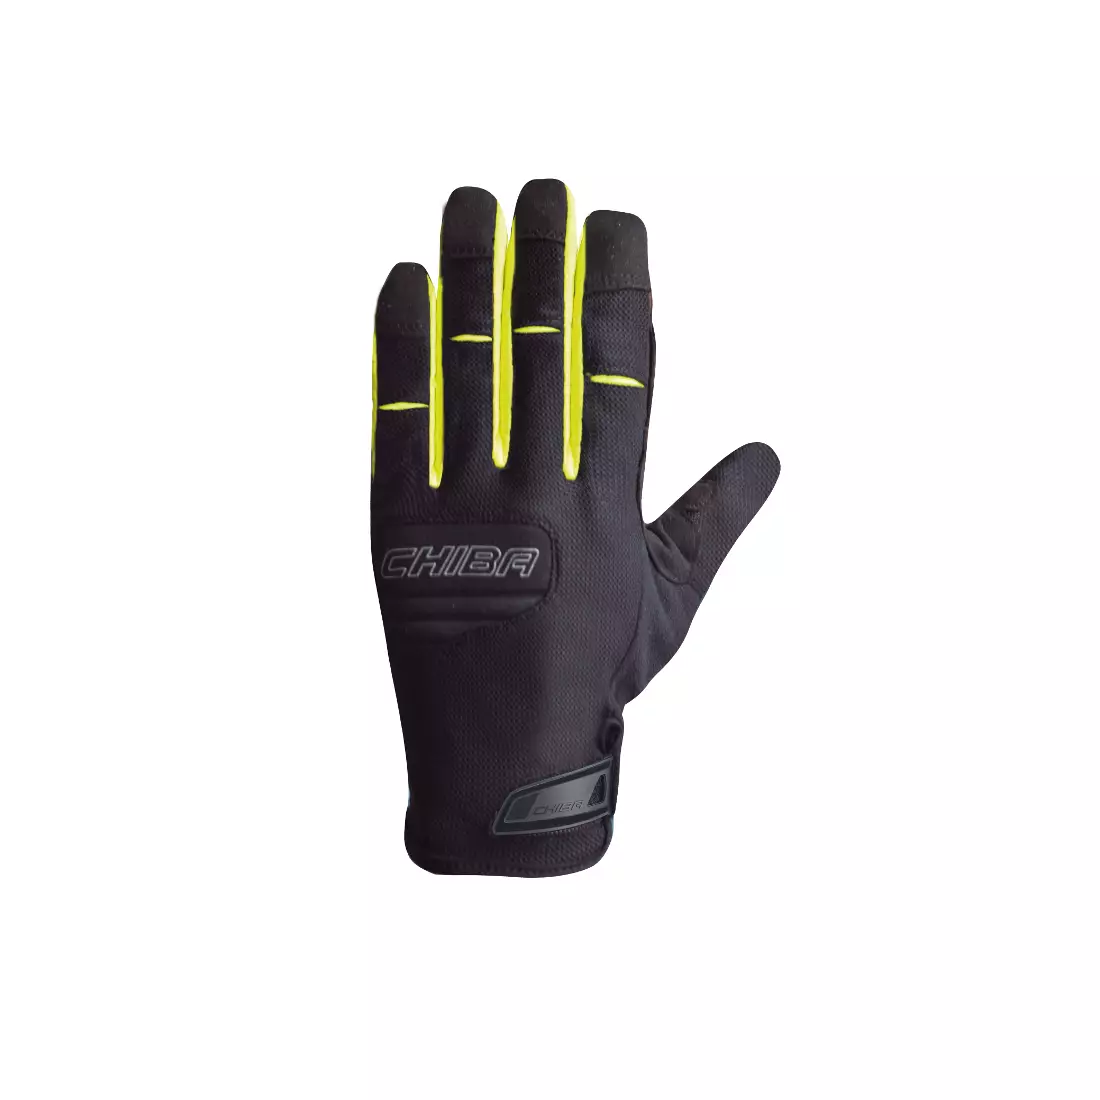 CHIBA TITAN letné dlhé prstové cyklistické rukavice, čierna fluor žltá 30786